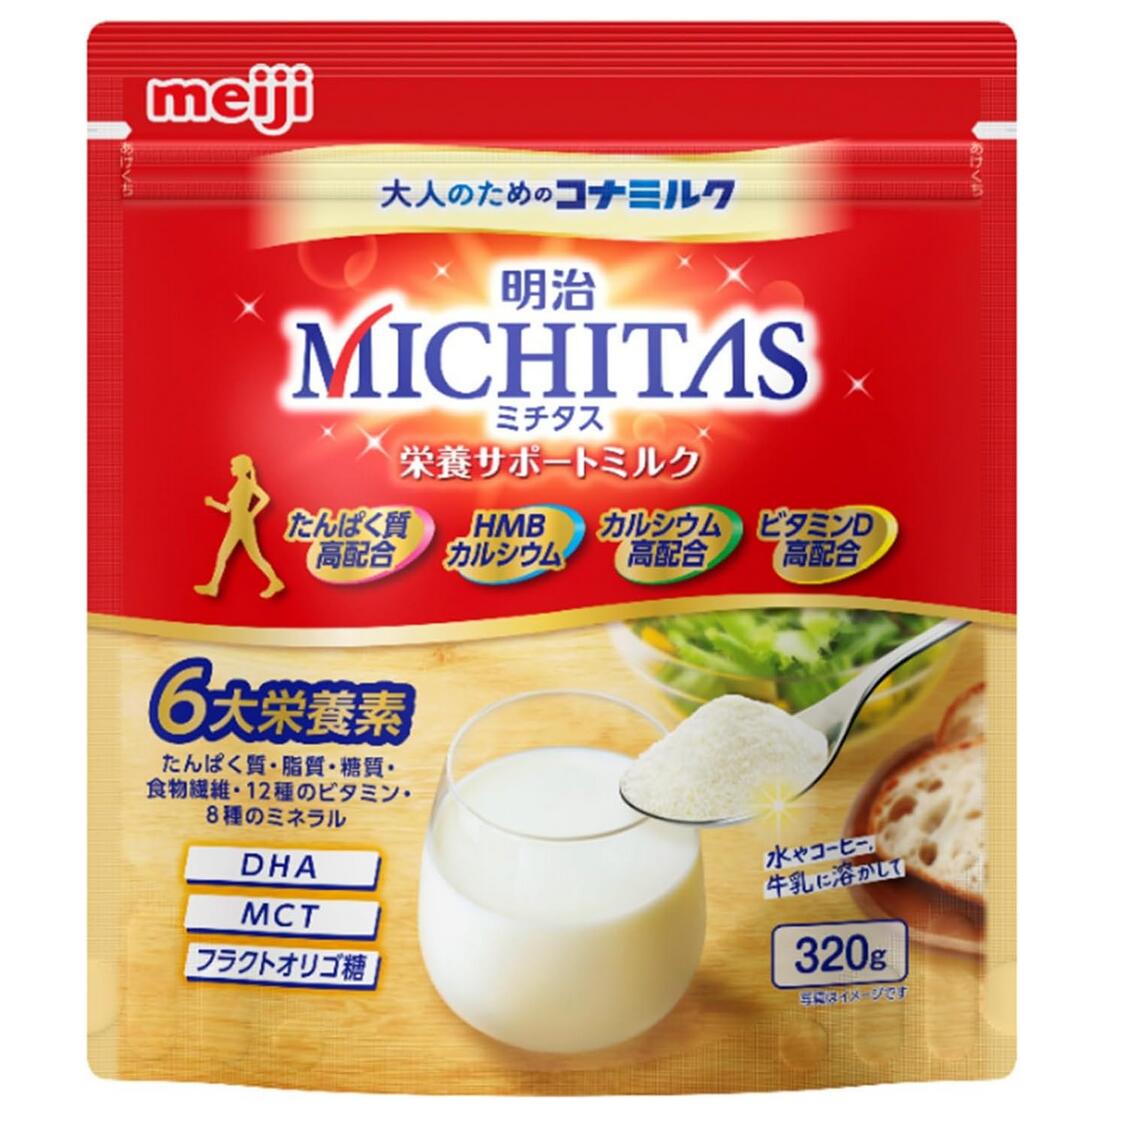 meiji 明治 MICHITAS ミチタス 栄養サポートミルク 320g 5個セット【送料無料】